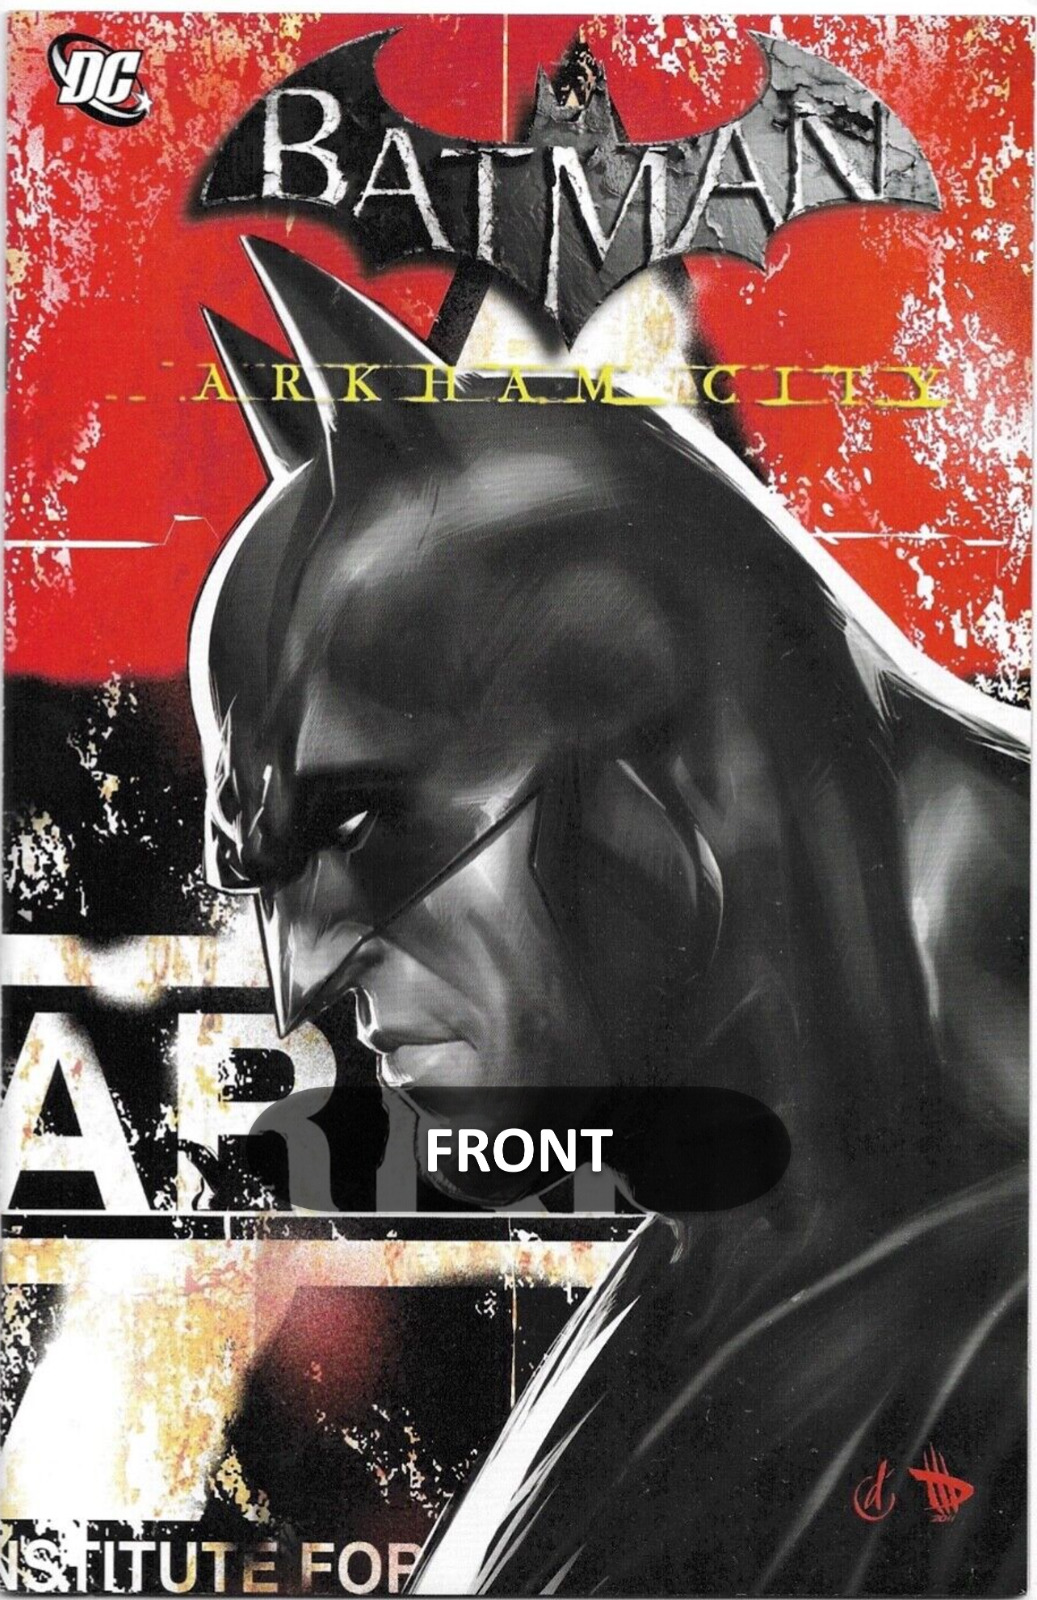 BATMAN: Arkham City Special Issue # 1 (DC Comics), August 2011